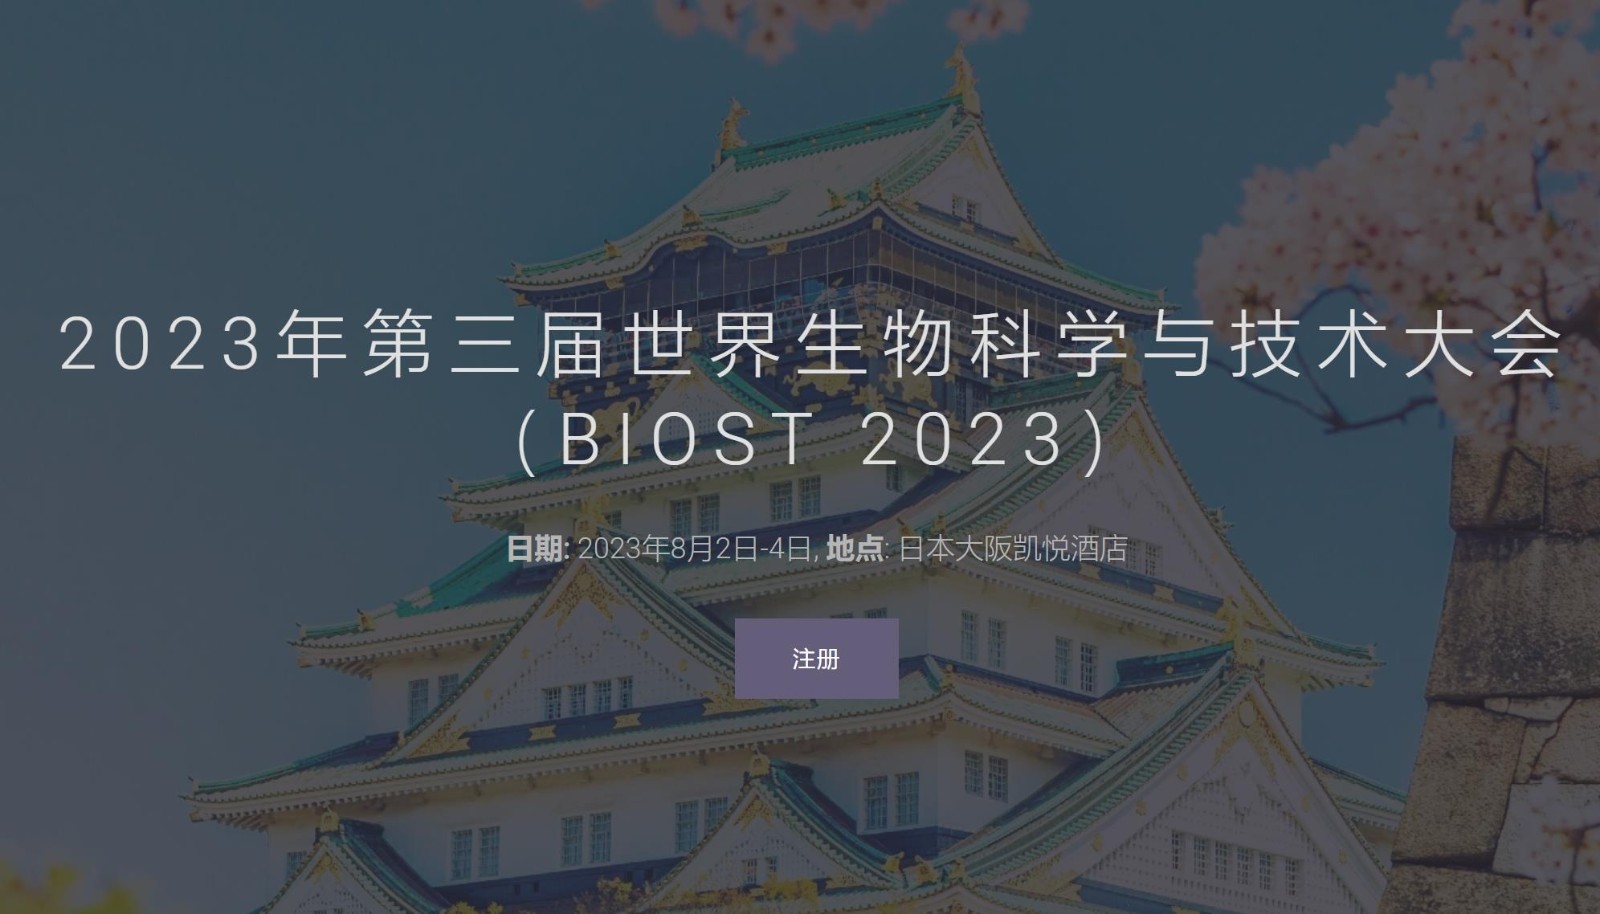 2023年第三届世界生物科学与技术大会（BIOST 2023）